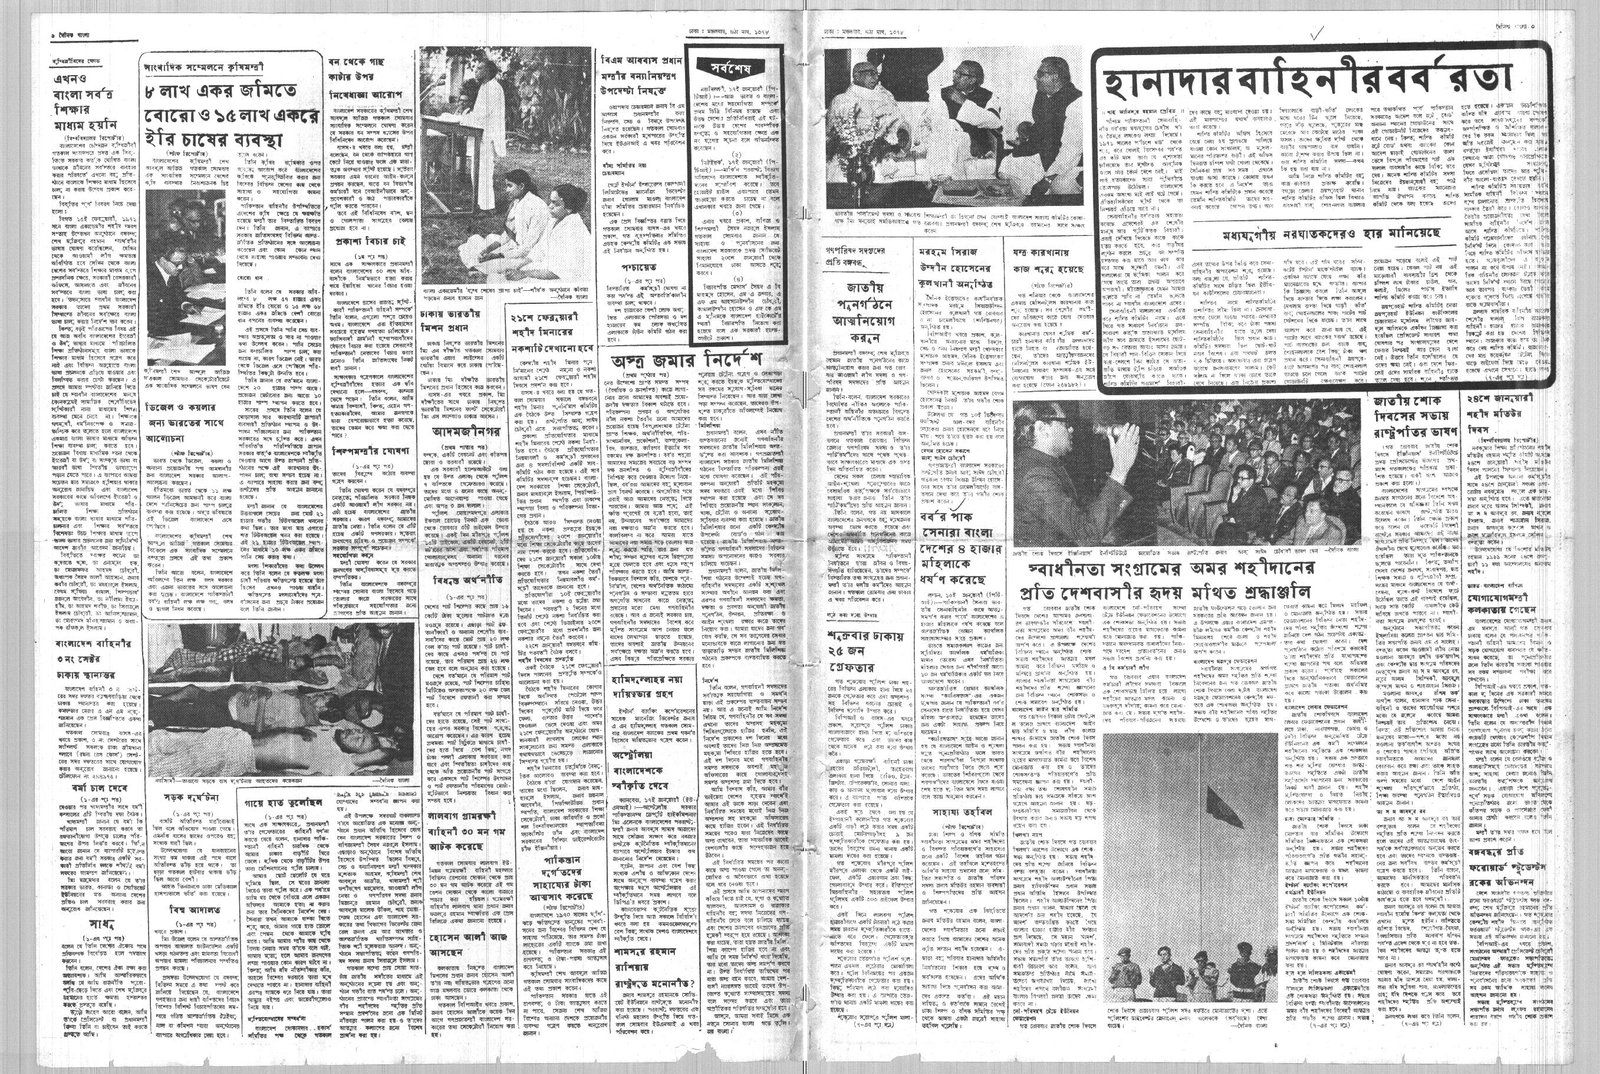 18JAN1972-DAINIK BANGLA-Regular-Page 3 and 6